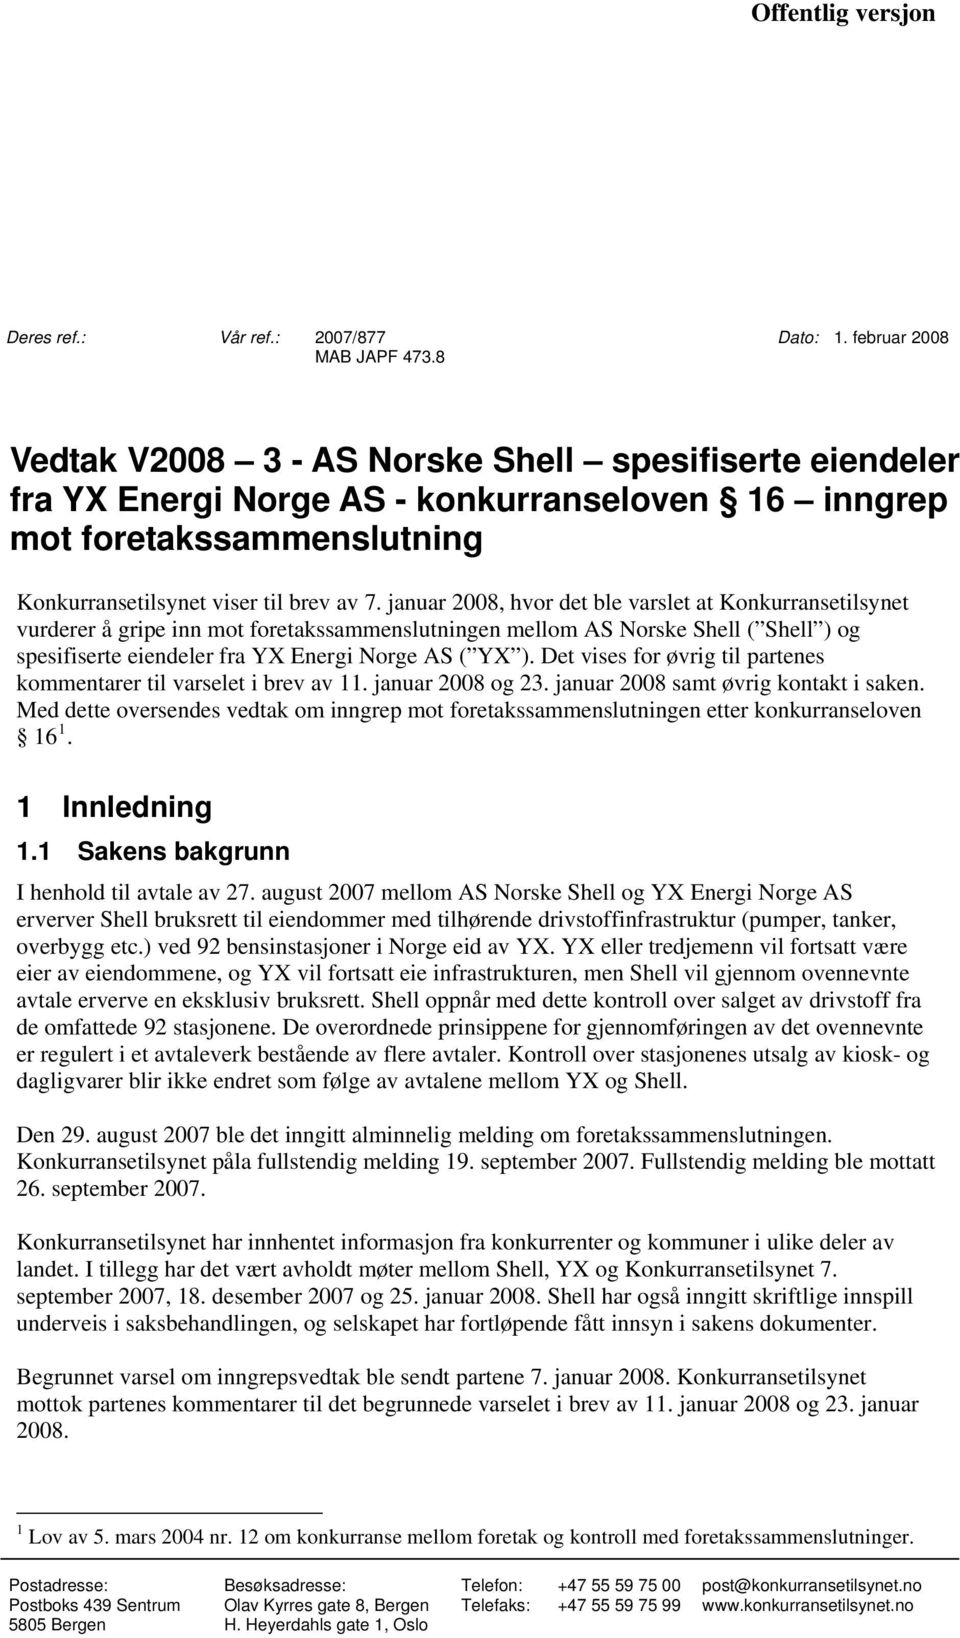 januar 2008, hvor det ble varslet at Konkurransetilsynet vurderer å gripe inn mot foretakssammenslutningen mellom AS Norske Shell ( Shell ) og spesifiserte eiendeler fra YX Energi Norge AS ( YX ).